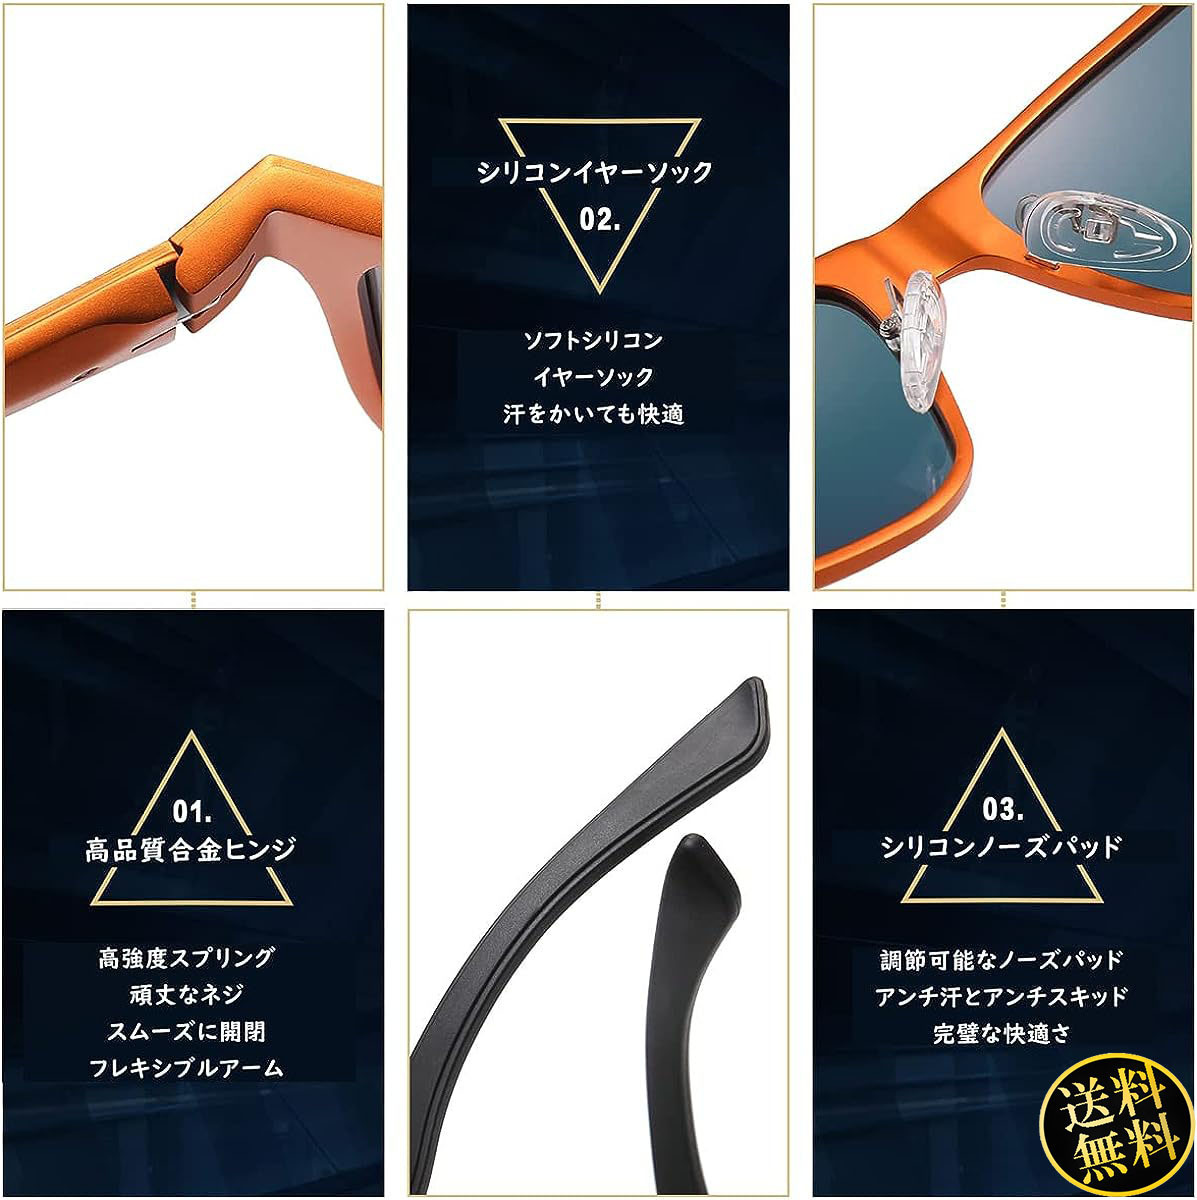 【個性的で斬新な印象をアピール】 スポーツサングラス オレンジTAC偏光レンズ 高炭素繊維テンプル ファッション アイテム 日本人